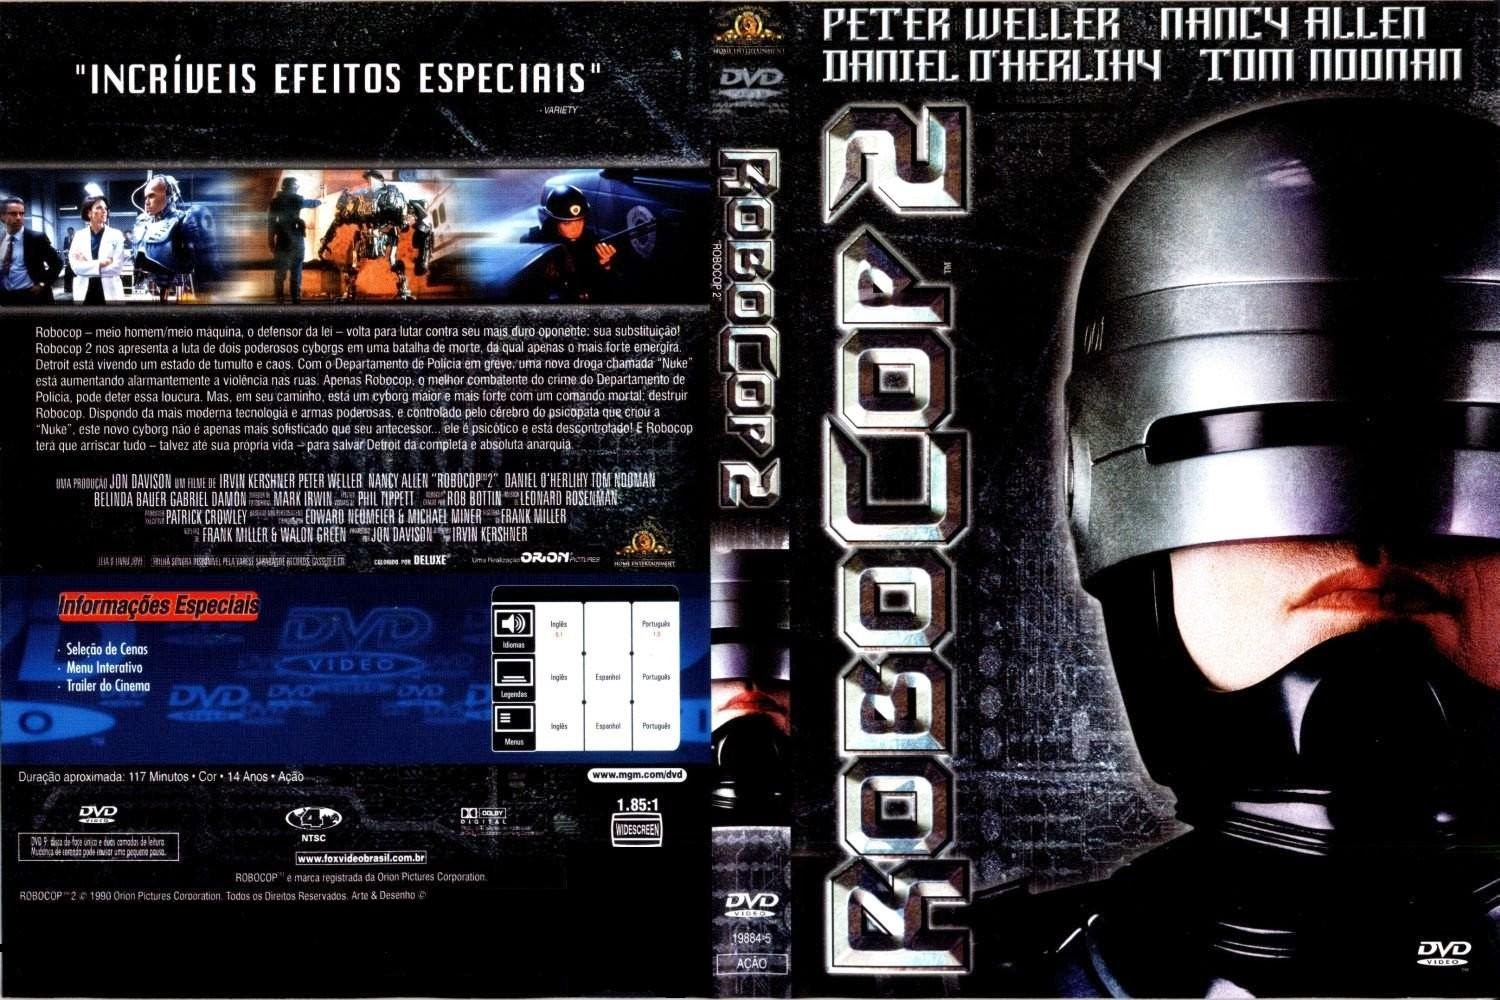 Робокоп игра требования. Cover DVD обложка Робокоп-1987. Robocop 2 1990. Робокоп 2 1990 обложка DVD. Cover DVD обложка Робокоп-3.